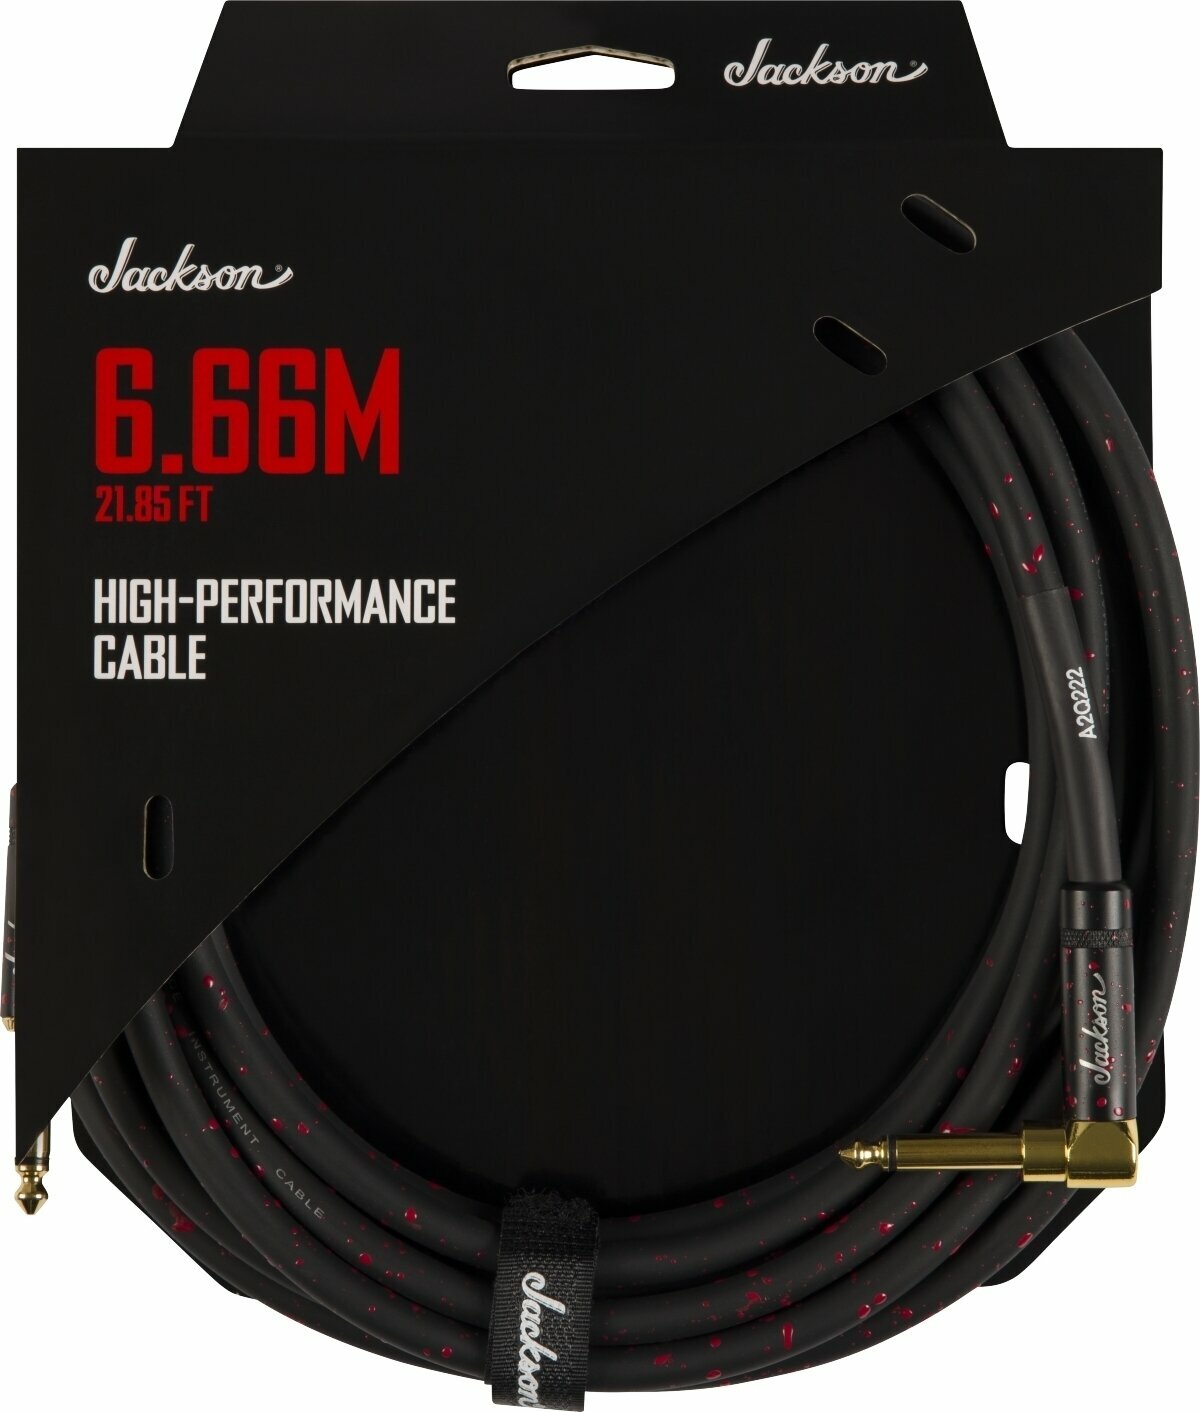 Nástrojový kabel Jackson High Performance Cable Černá-Červená 6,66 m Rovný - Lomený